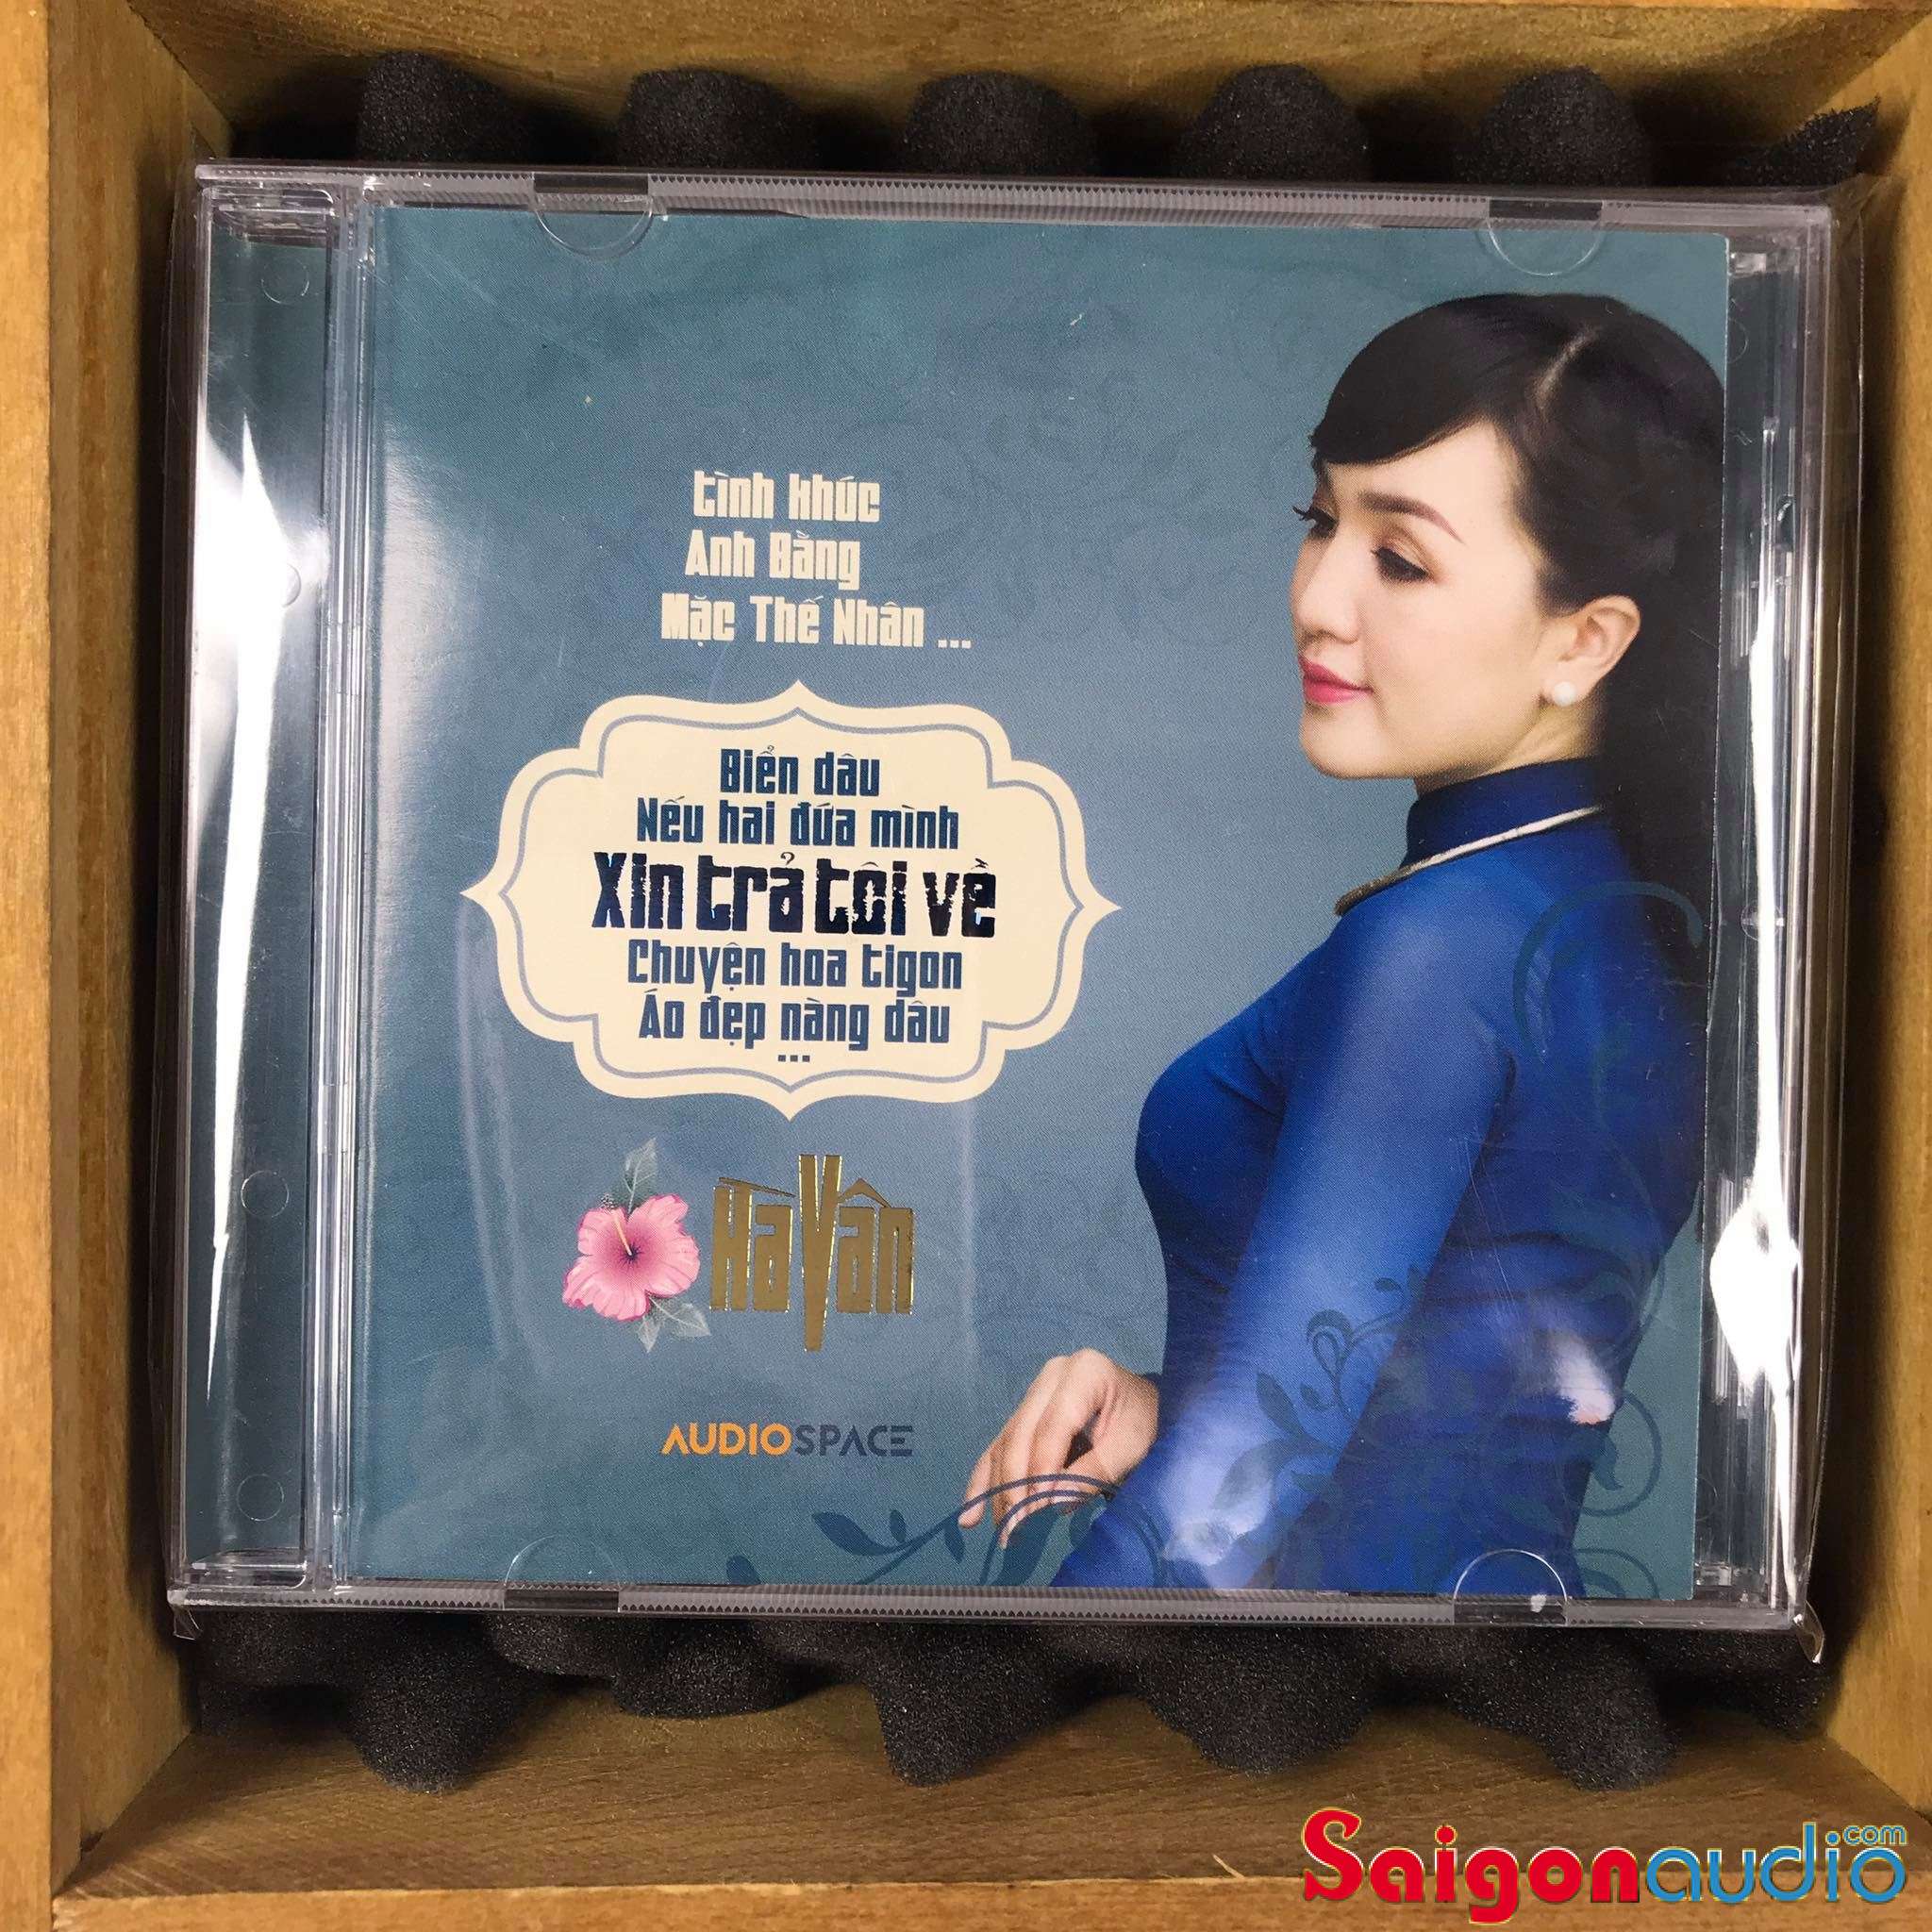 Đĩa CD gốc Hà Vân - Tình Khúc Anh Bằng - Mạc Thế Nhân - Xin Trả Tôi Về (Free ship khi mua 2 đĩa CD cùng hoặc khác loại)